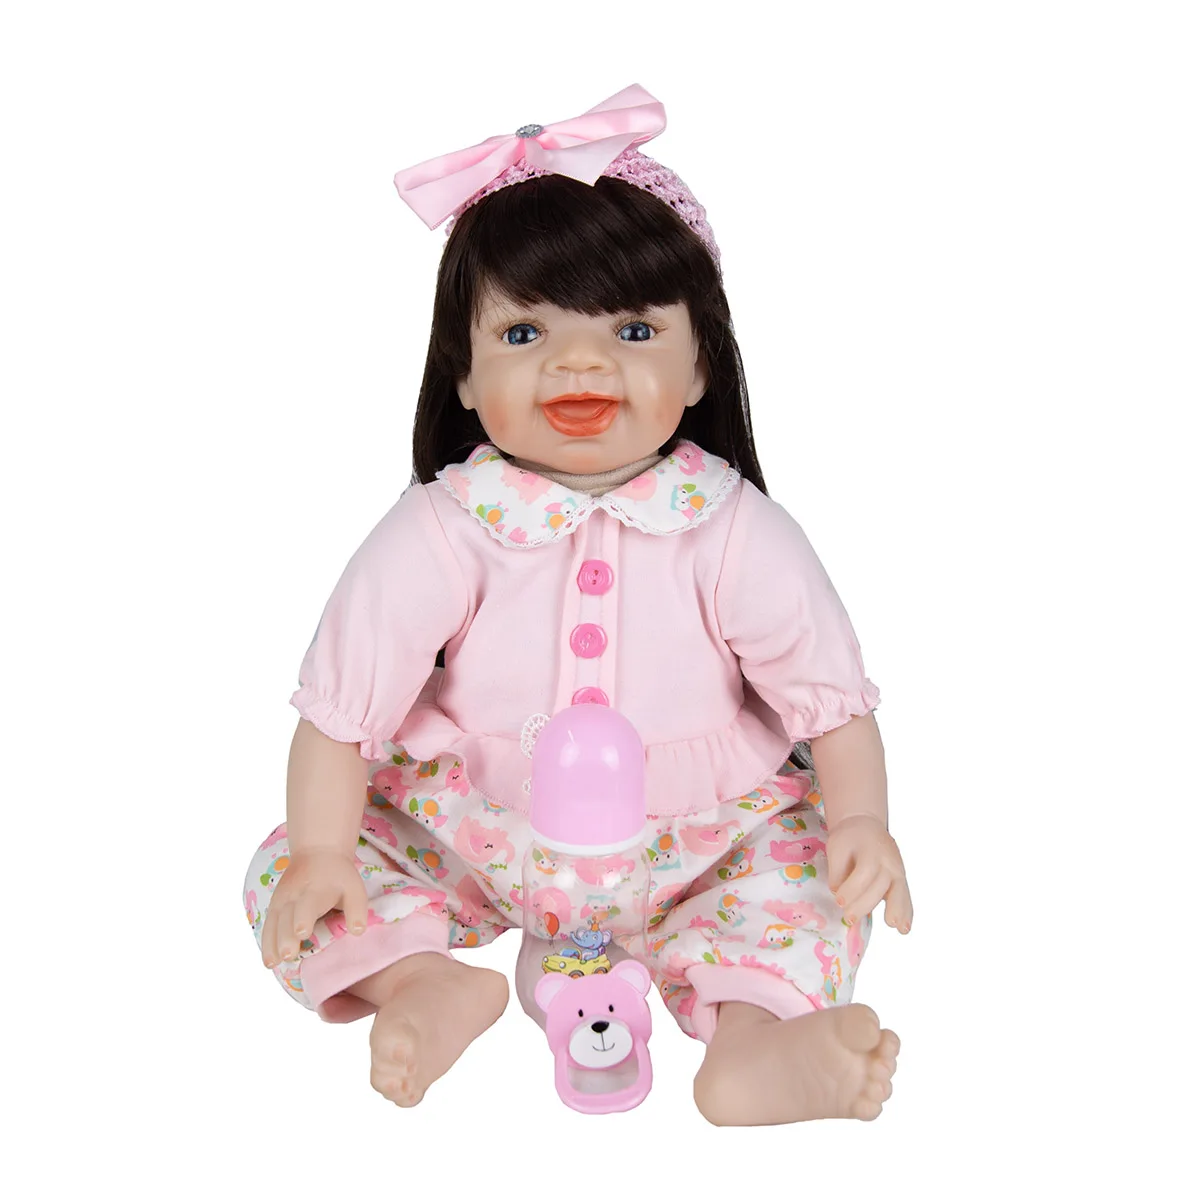 Dlhé Účesy 55 Cm Batoľa Reborn Baby Doll Odbavenie Látkové Telo Dievča Reborn Baby Doll Playmates Hračka Pre Deti, Deň Dary 2